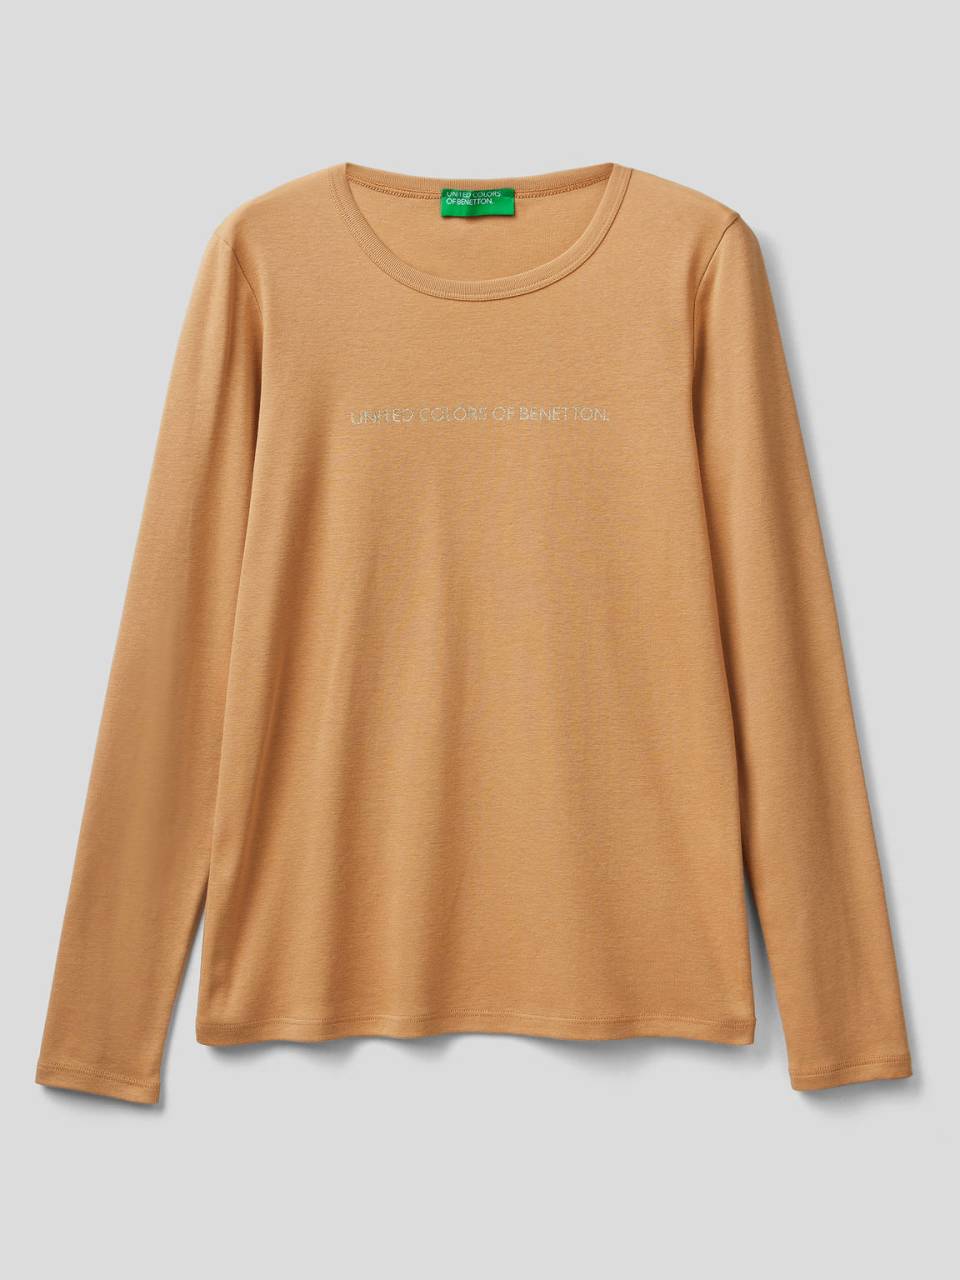 Benetton 100% cotton long sleeve beige t-shirt. 1